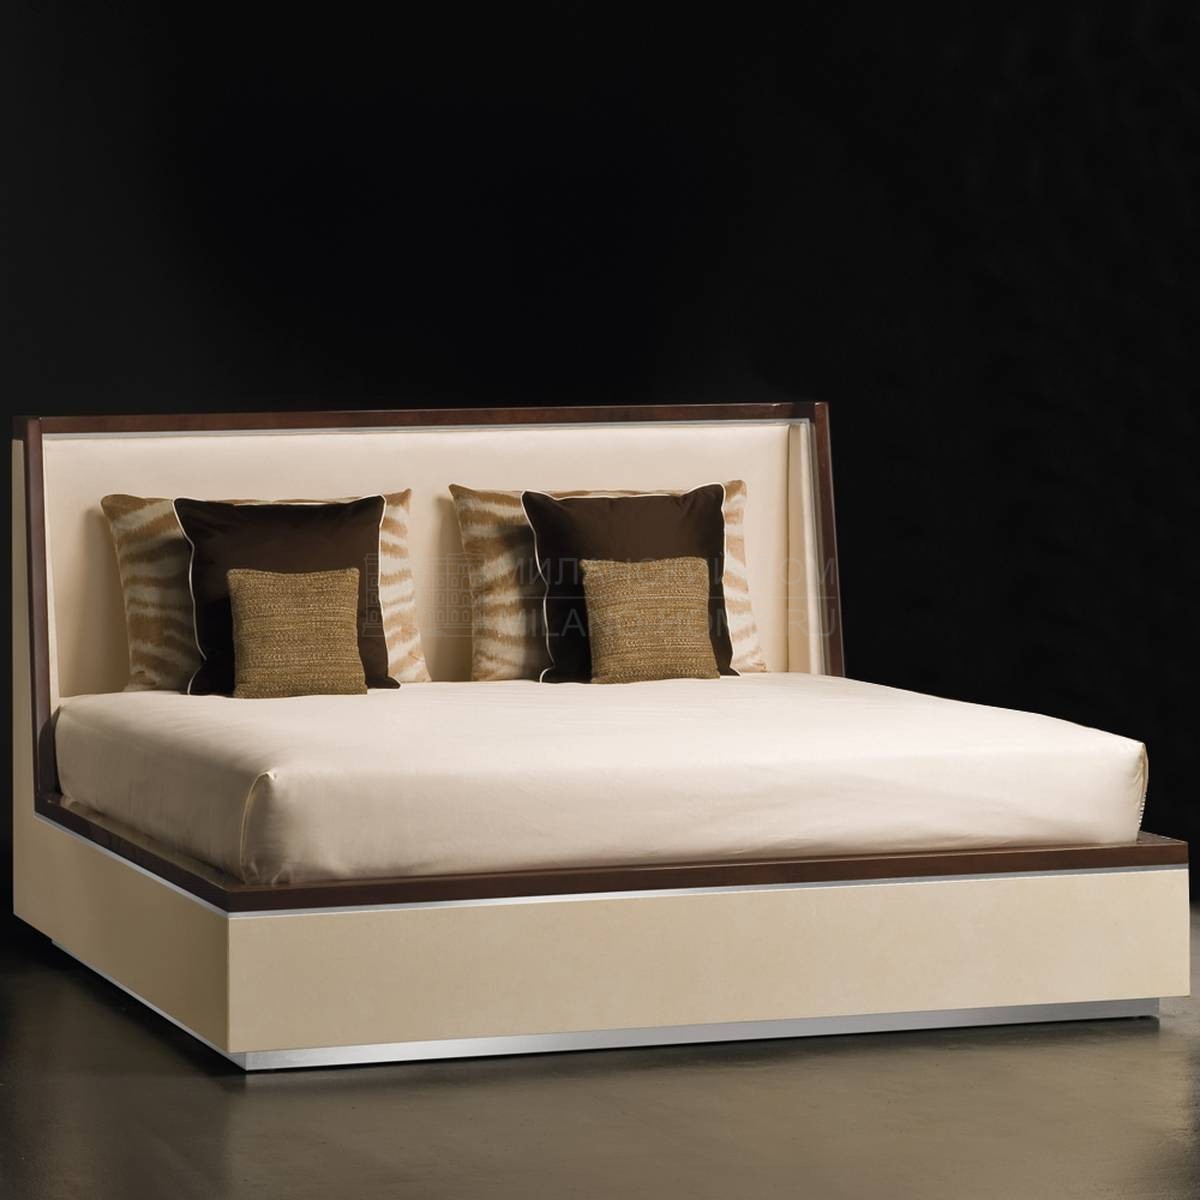 Кровать с деревянным изголовьем art.3324 из Италии фабрики TURA